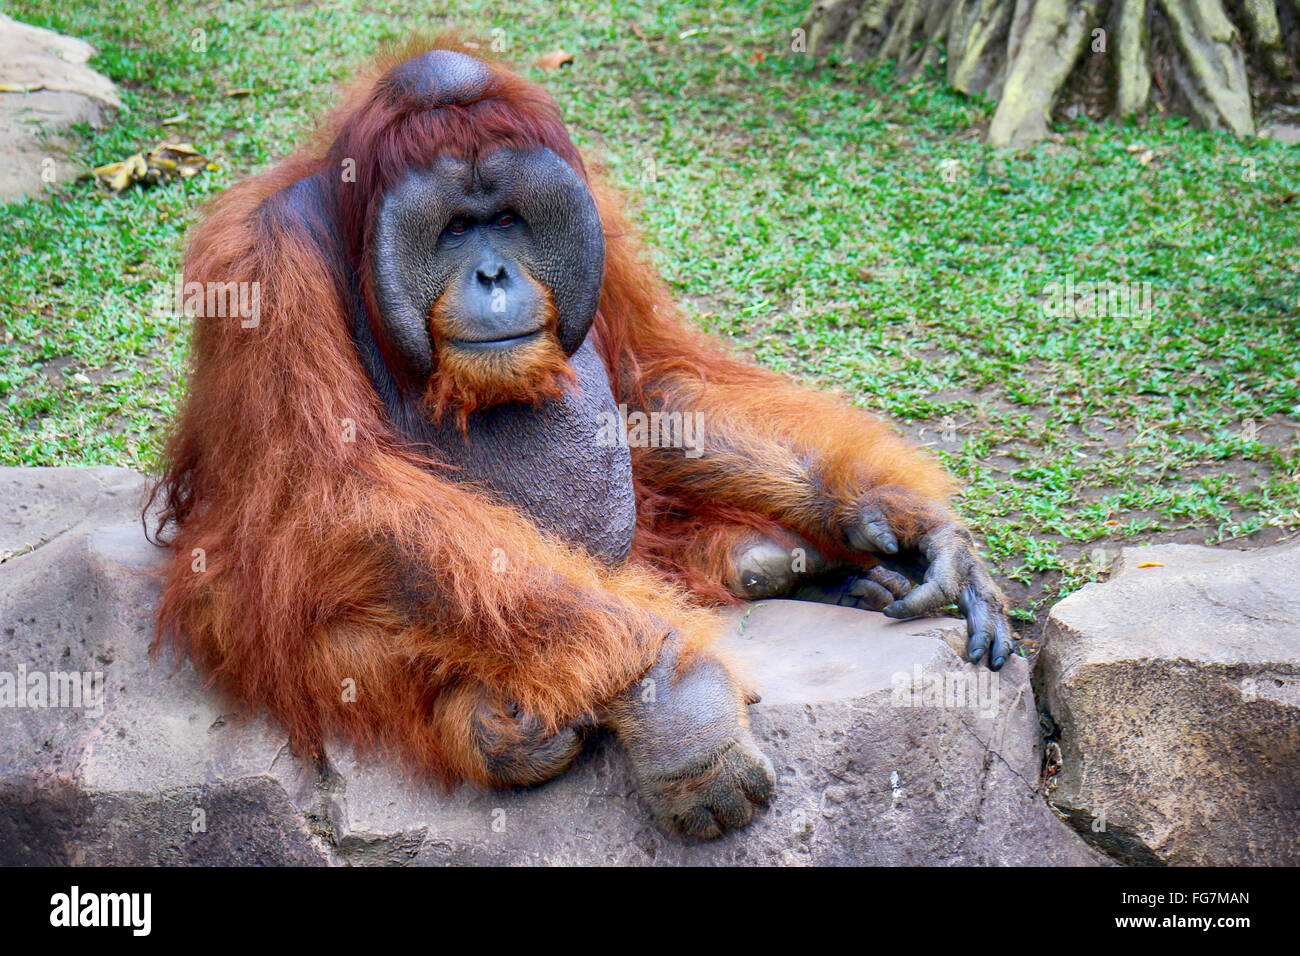 Orangutan Sitting On Retaining Wall On Field Stock Photo